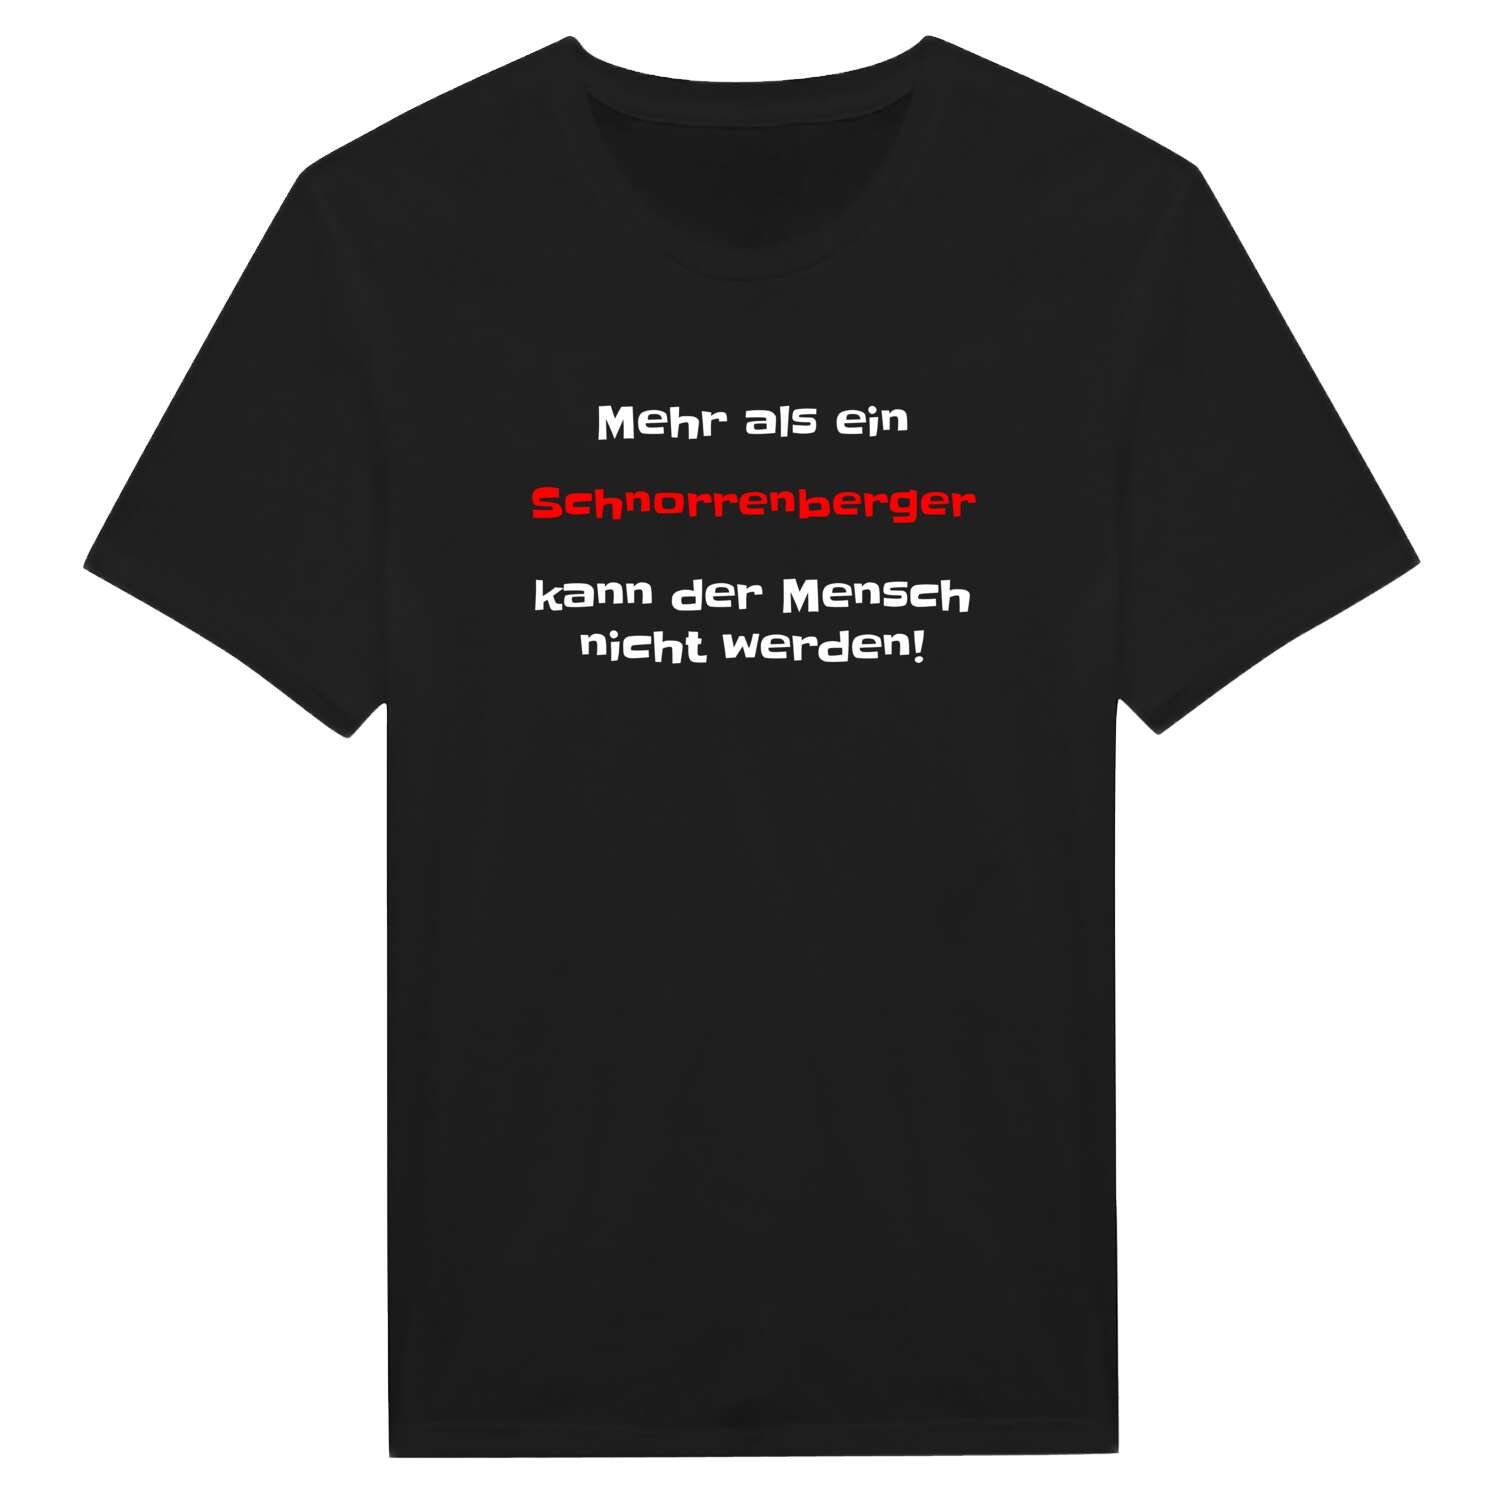 Schnorrenberg T-Shirt »Mehr als ein«